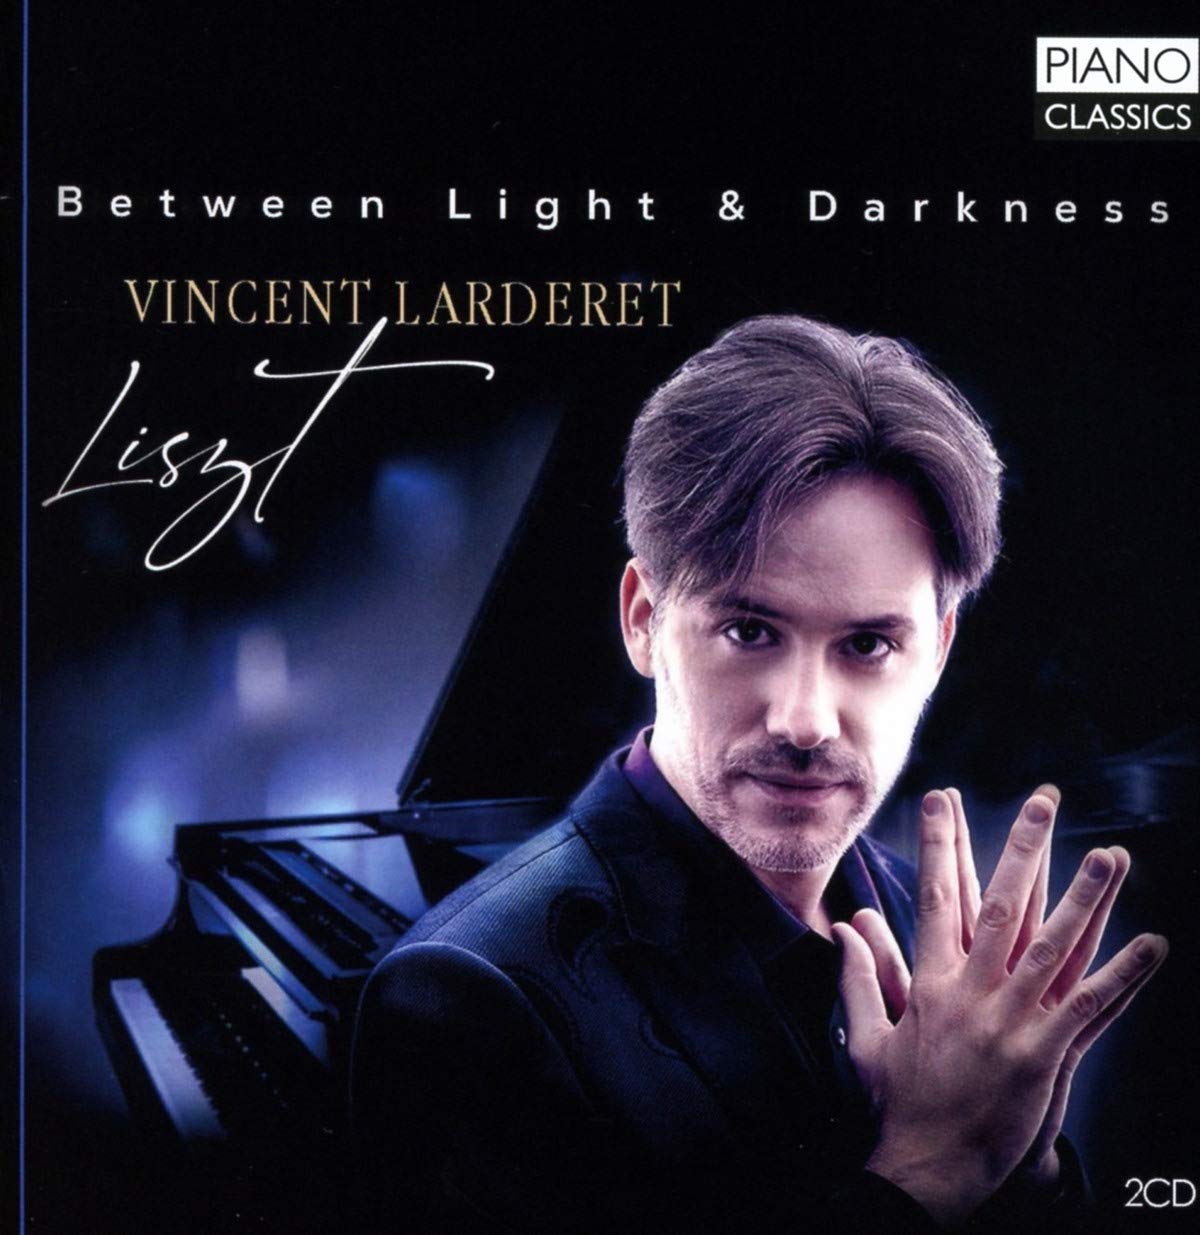 LISZT - BETWEEN LIGHT & DARKNESS 2CD VINCENT LARDERET